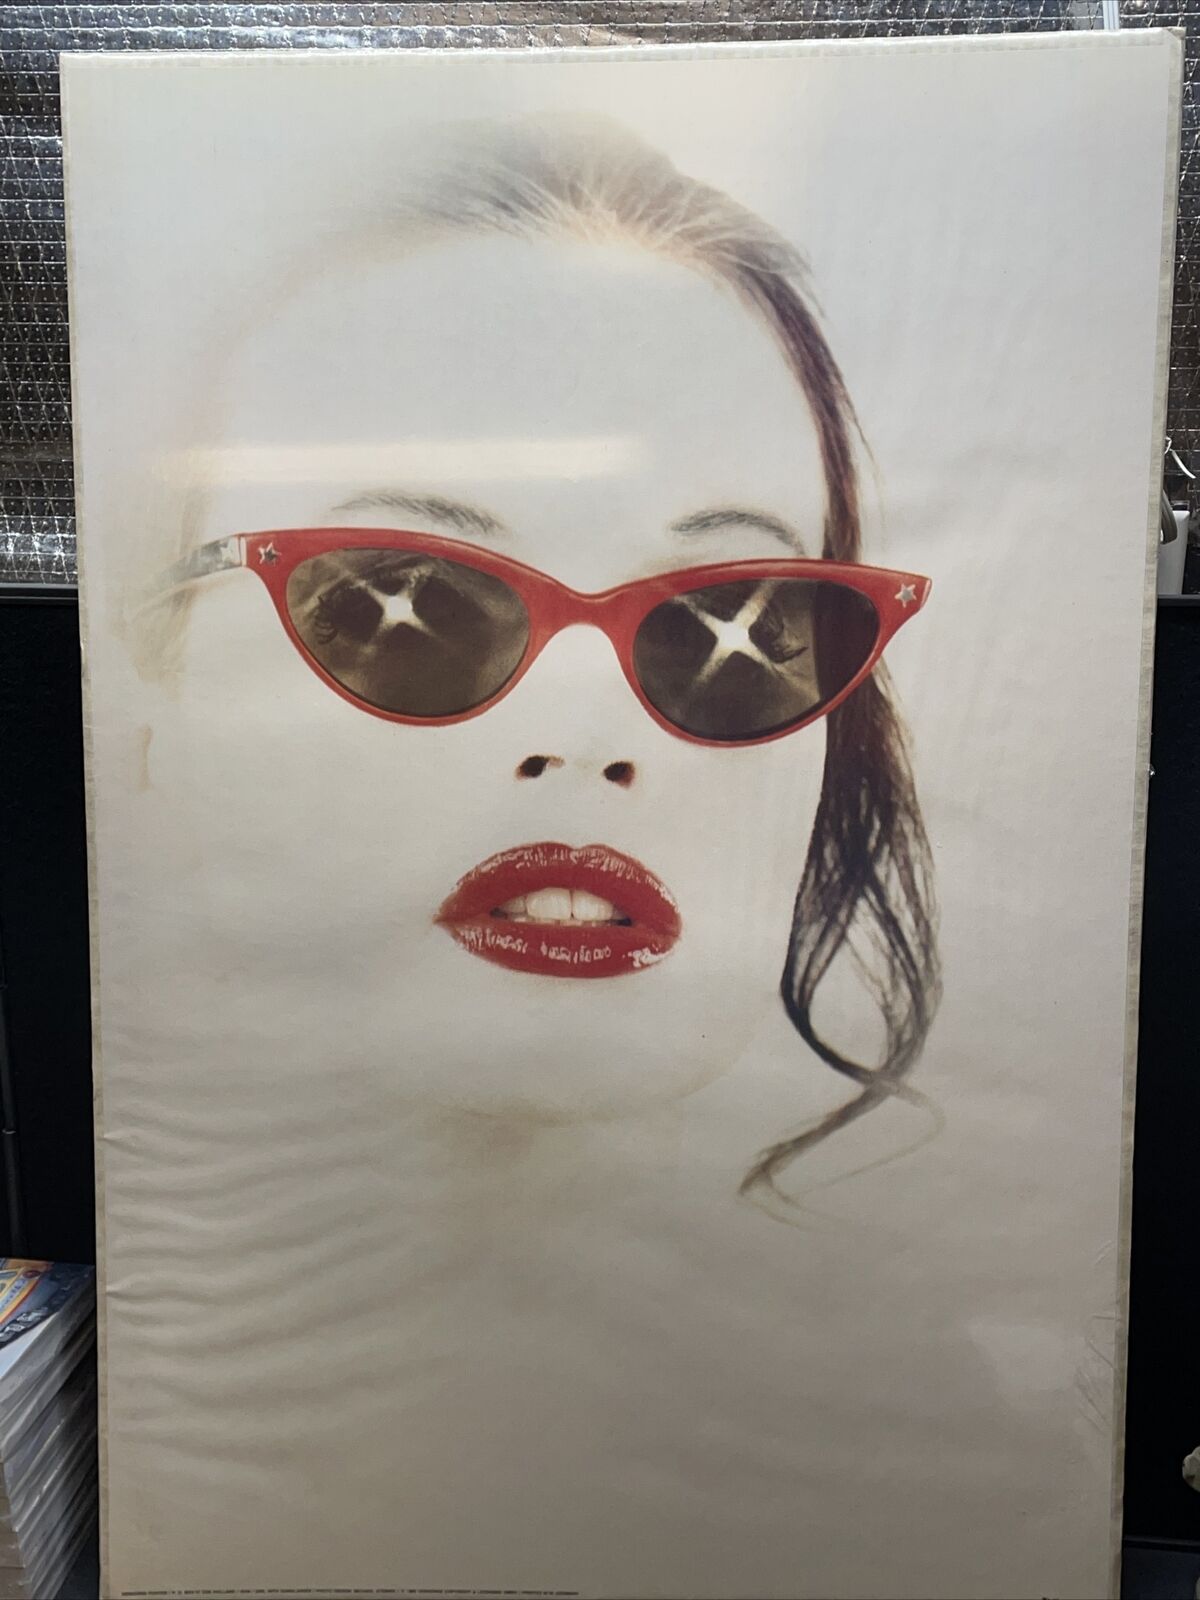 VERKERKE 1985 (GIRL WITH SUNGLASSES) MICHAEL STEINKE MOD ART POSTER 6539 36”x25”